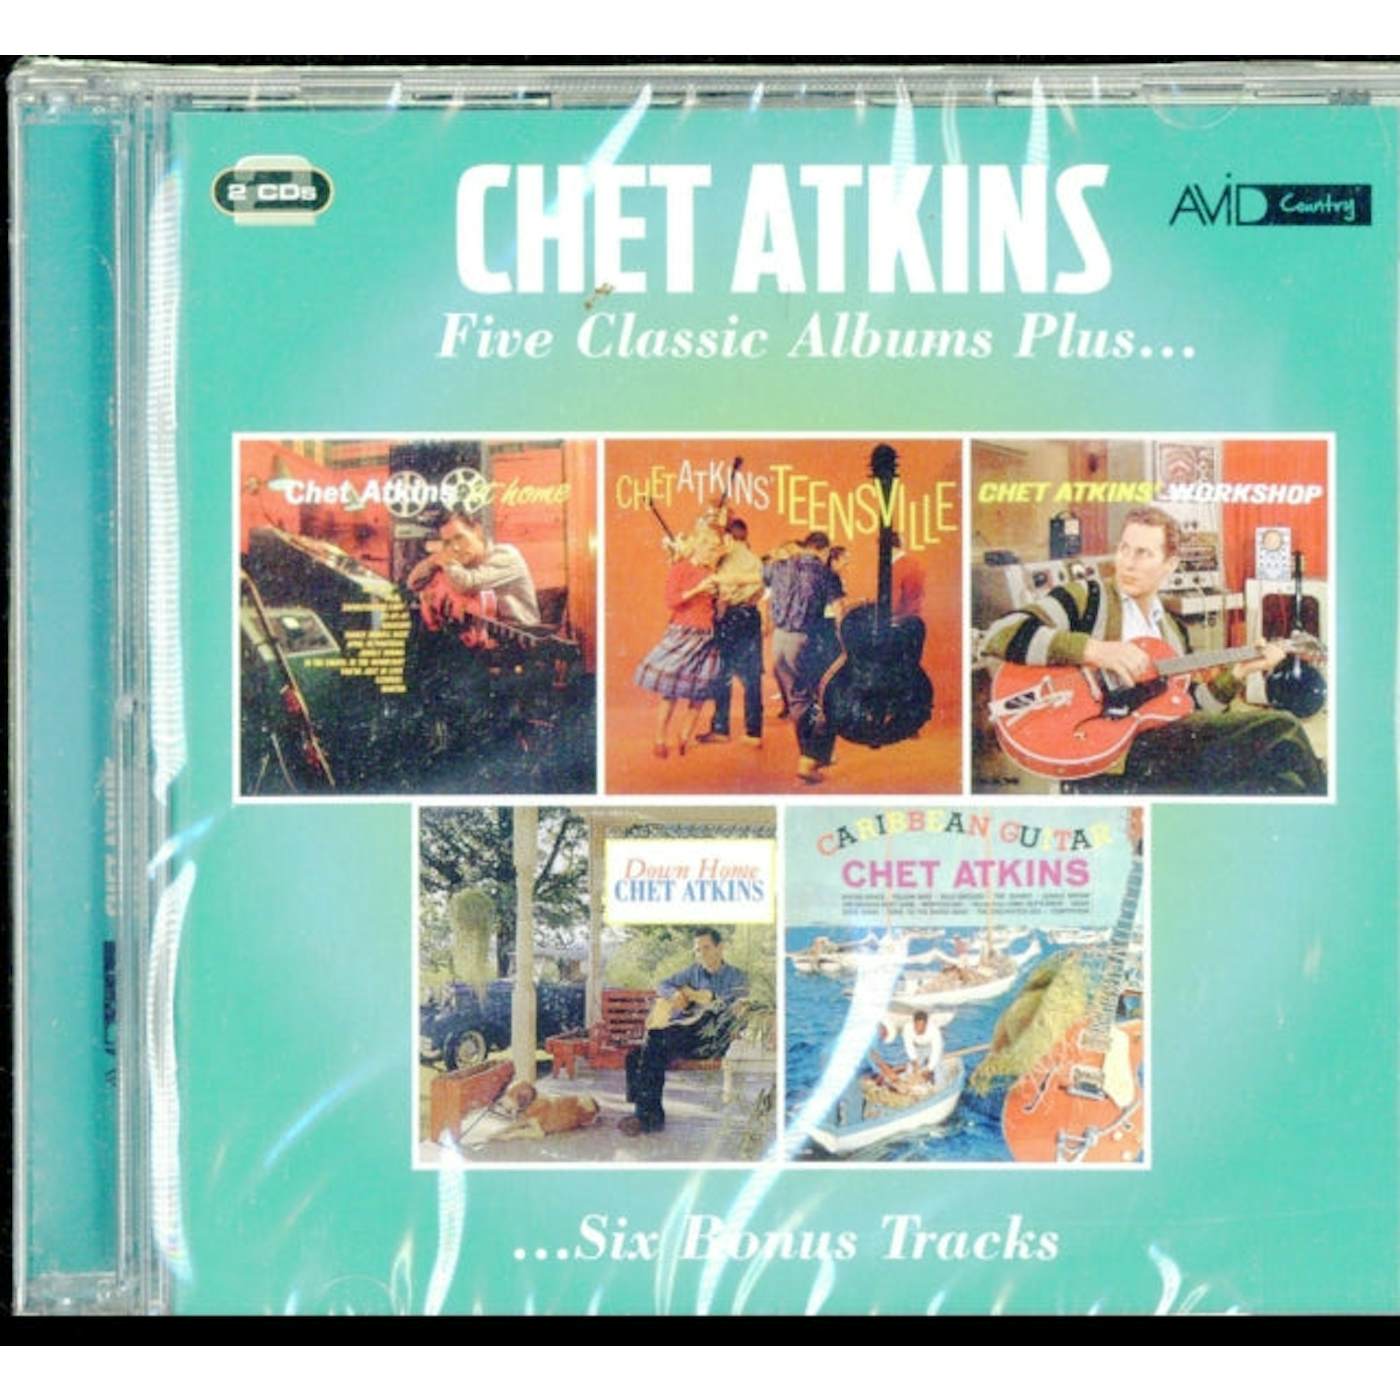 Chet Atkins CD - Five Classic Albums Plus